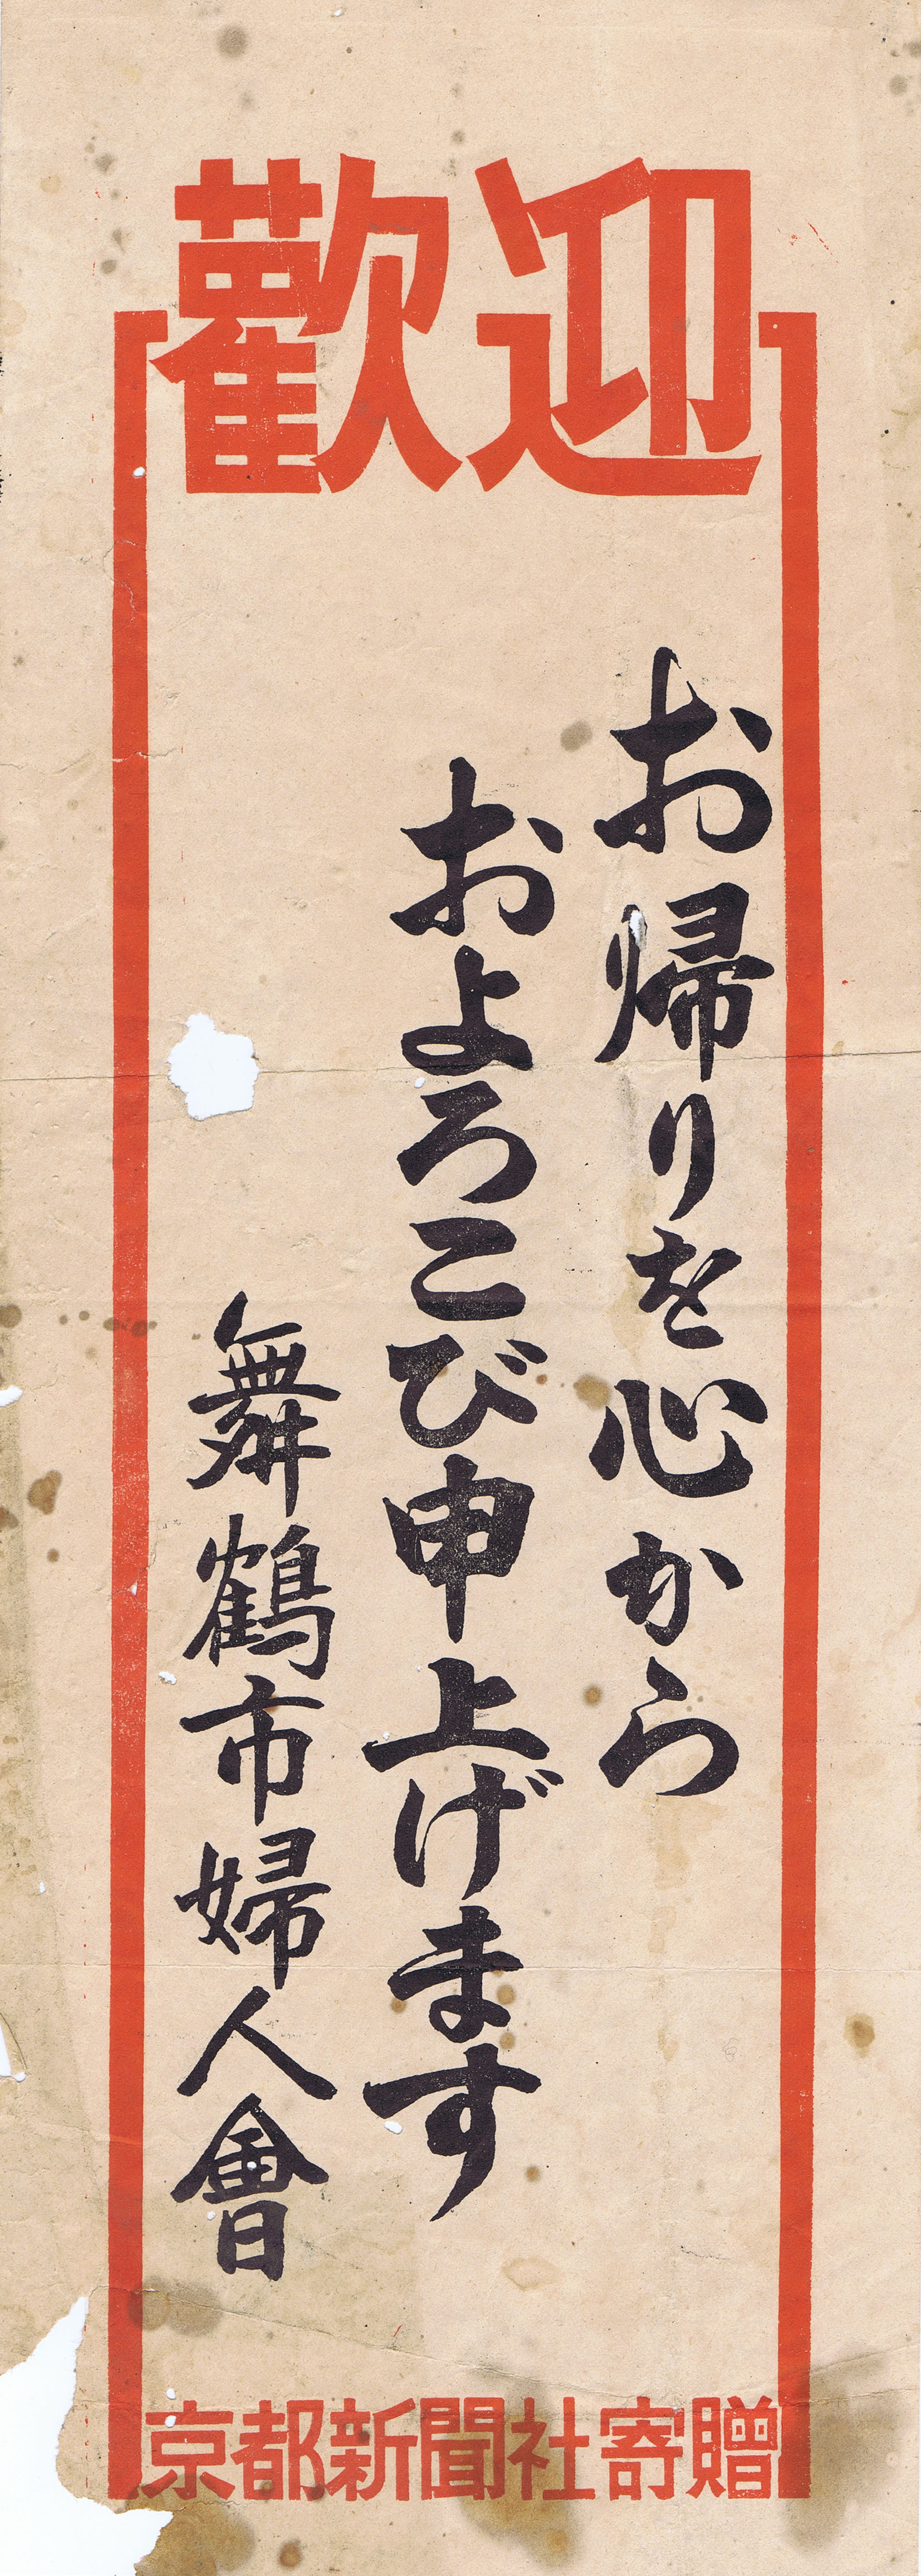 Welcome poster of Maizuru Women's Association